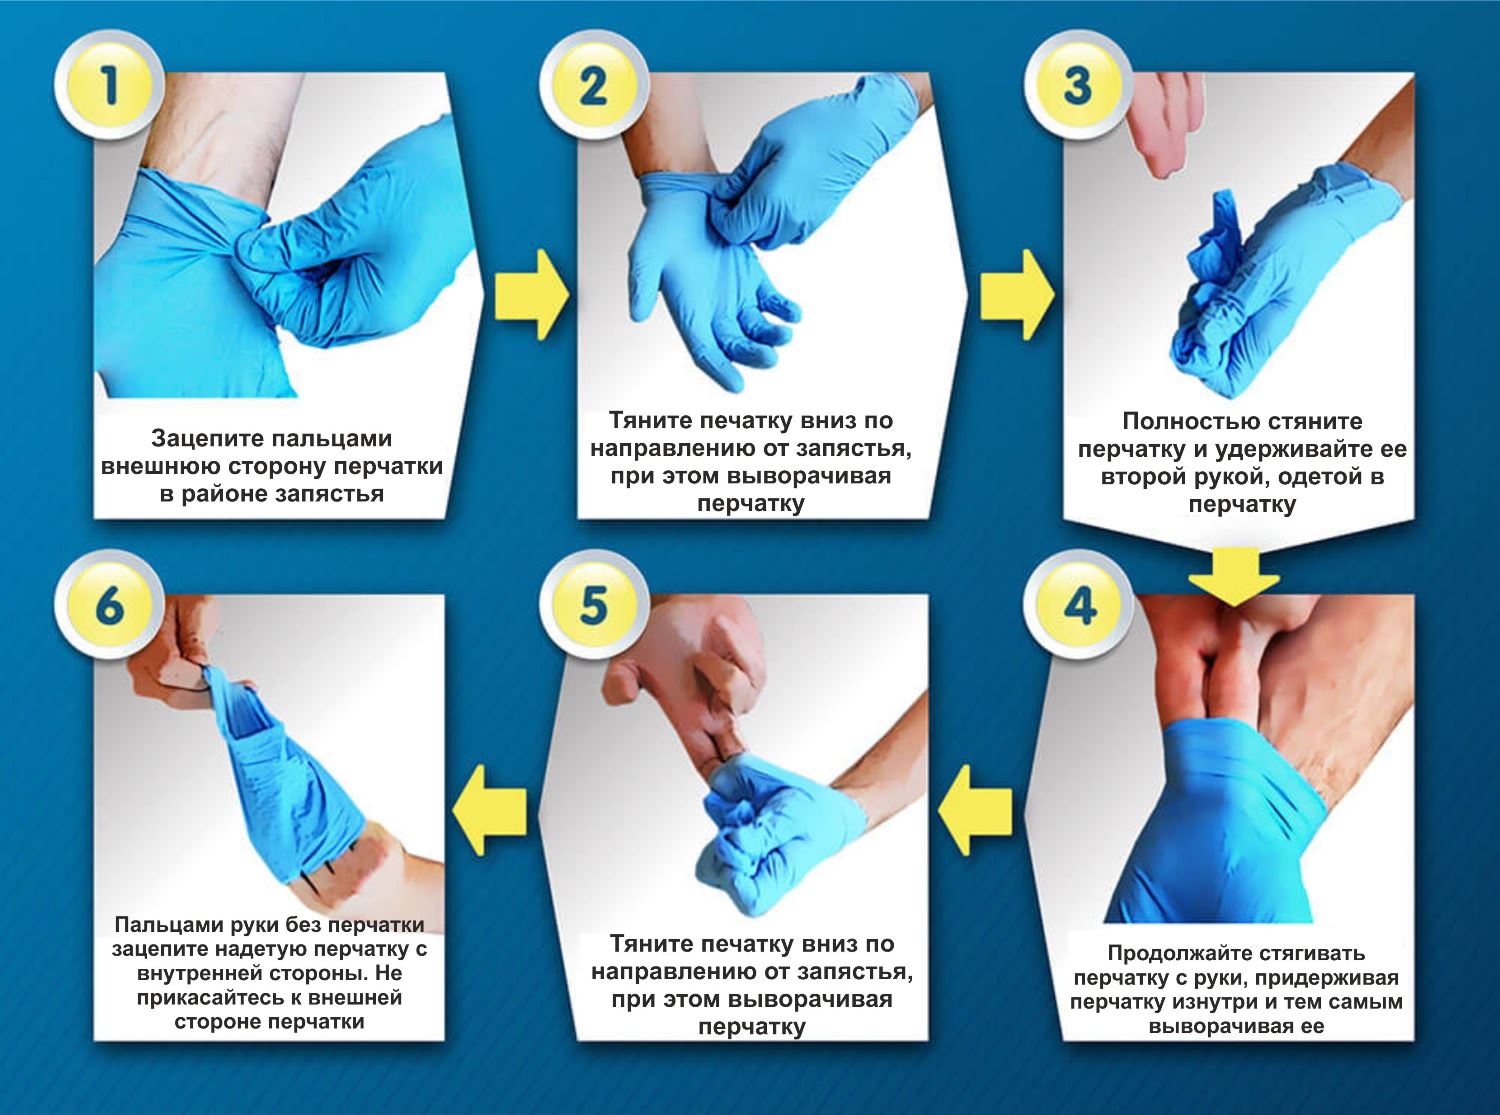 Использование перчаток для профилактики. Алгоритм снятия нестерильных перчаток. Надеть стерильные перчатки алгоритм. Как правильно одевать перчатки медицинские. Одевание стерильных перчаток алгоритм.